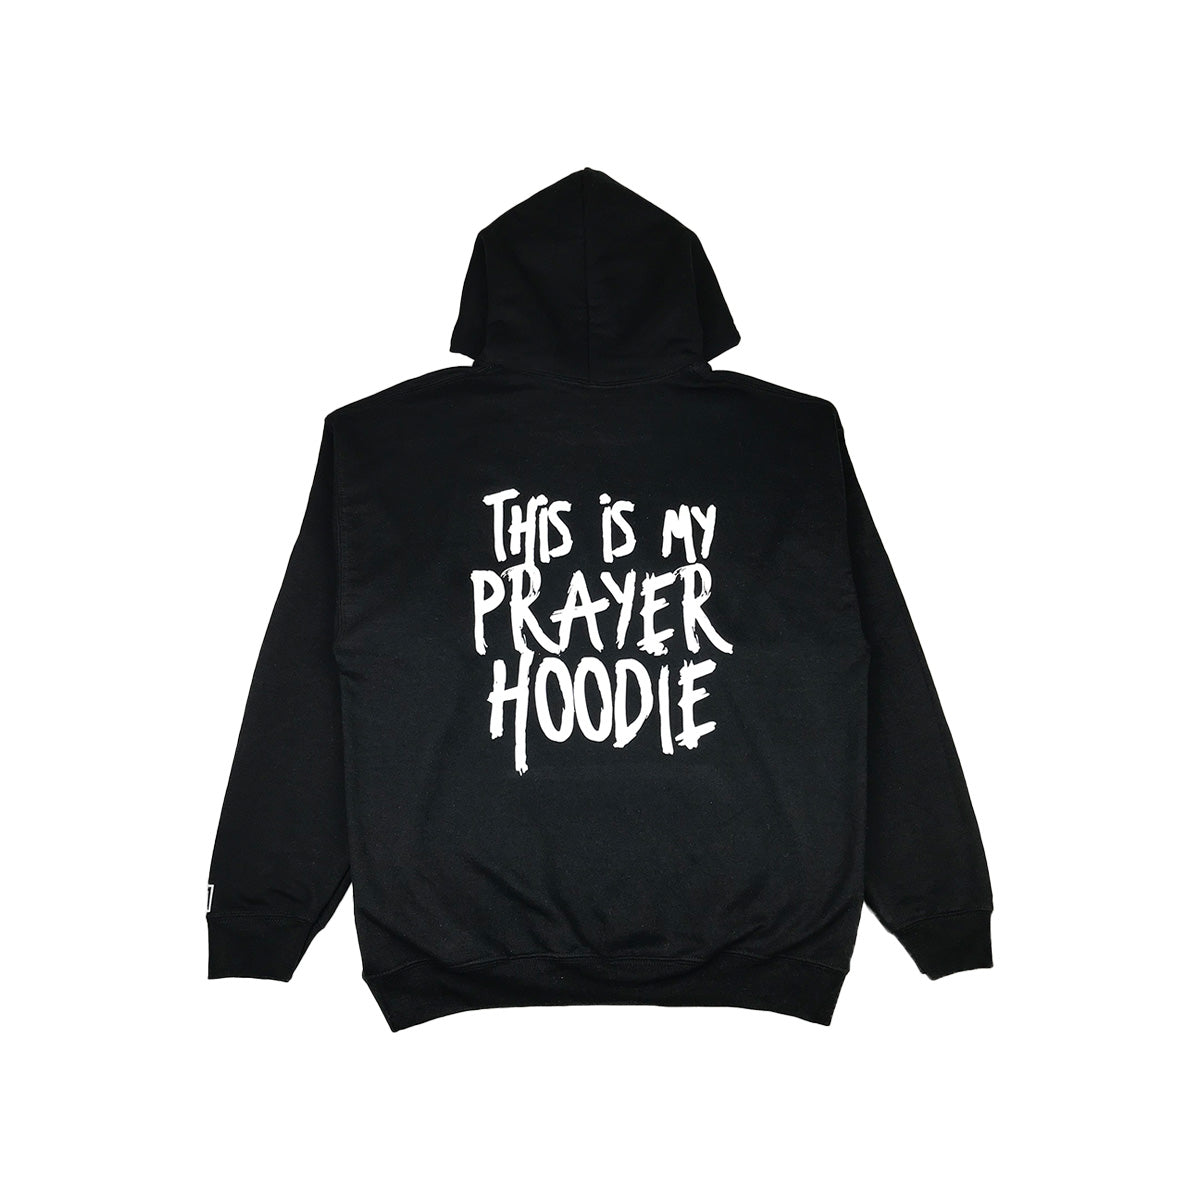 Prayer Works Hoodie